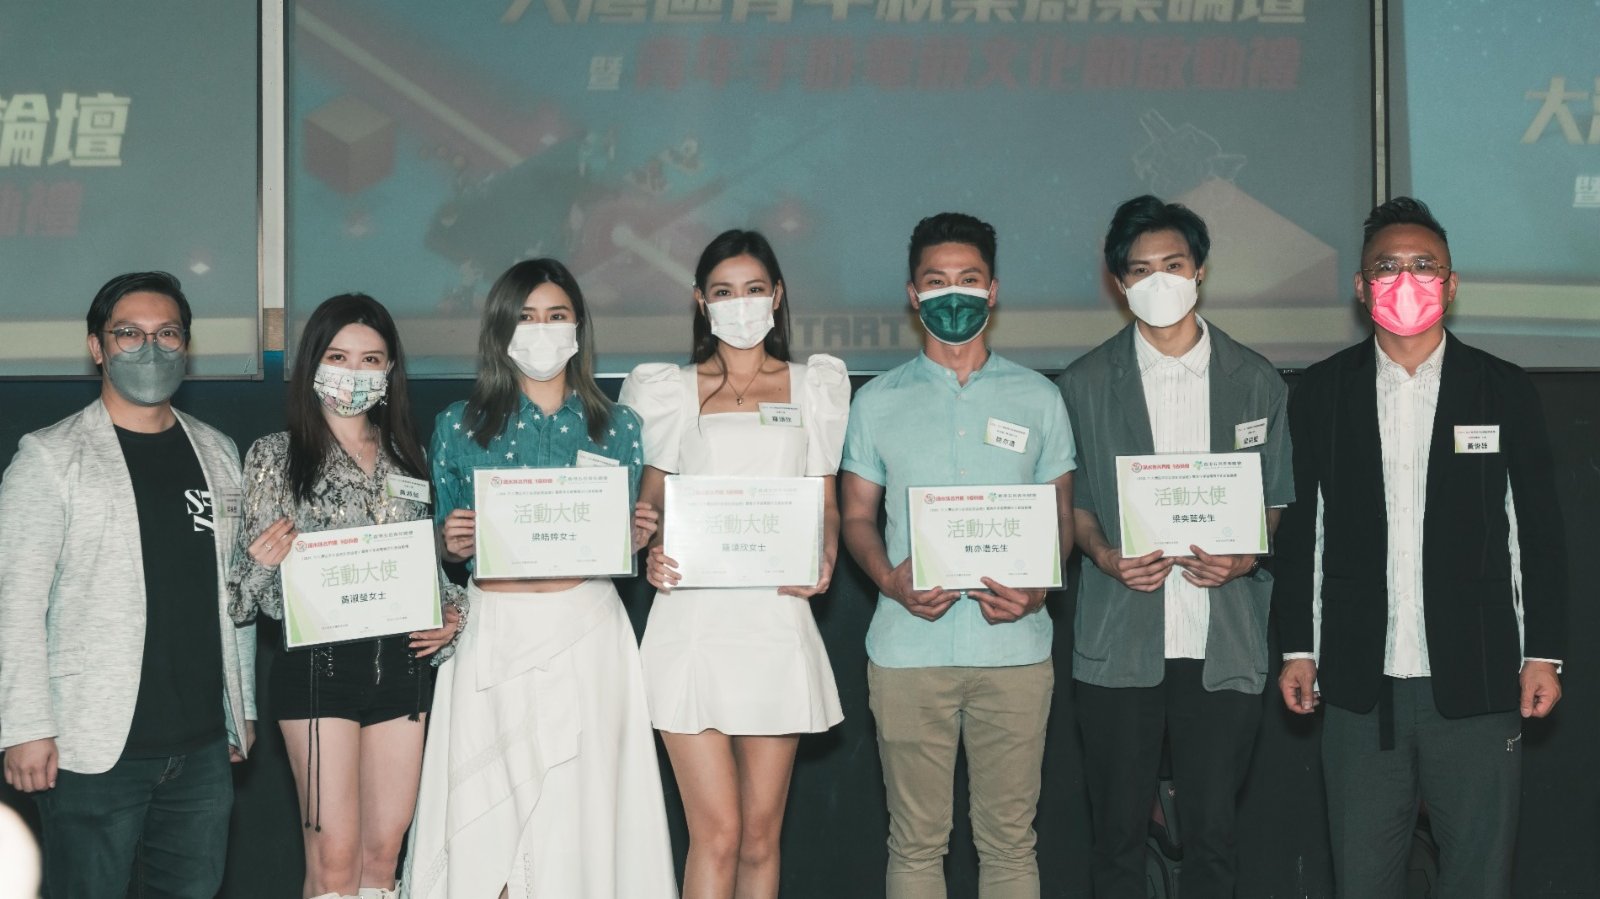 大灣區青年創就業論壇舉行　勉青年粵港合作中覓機遇